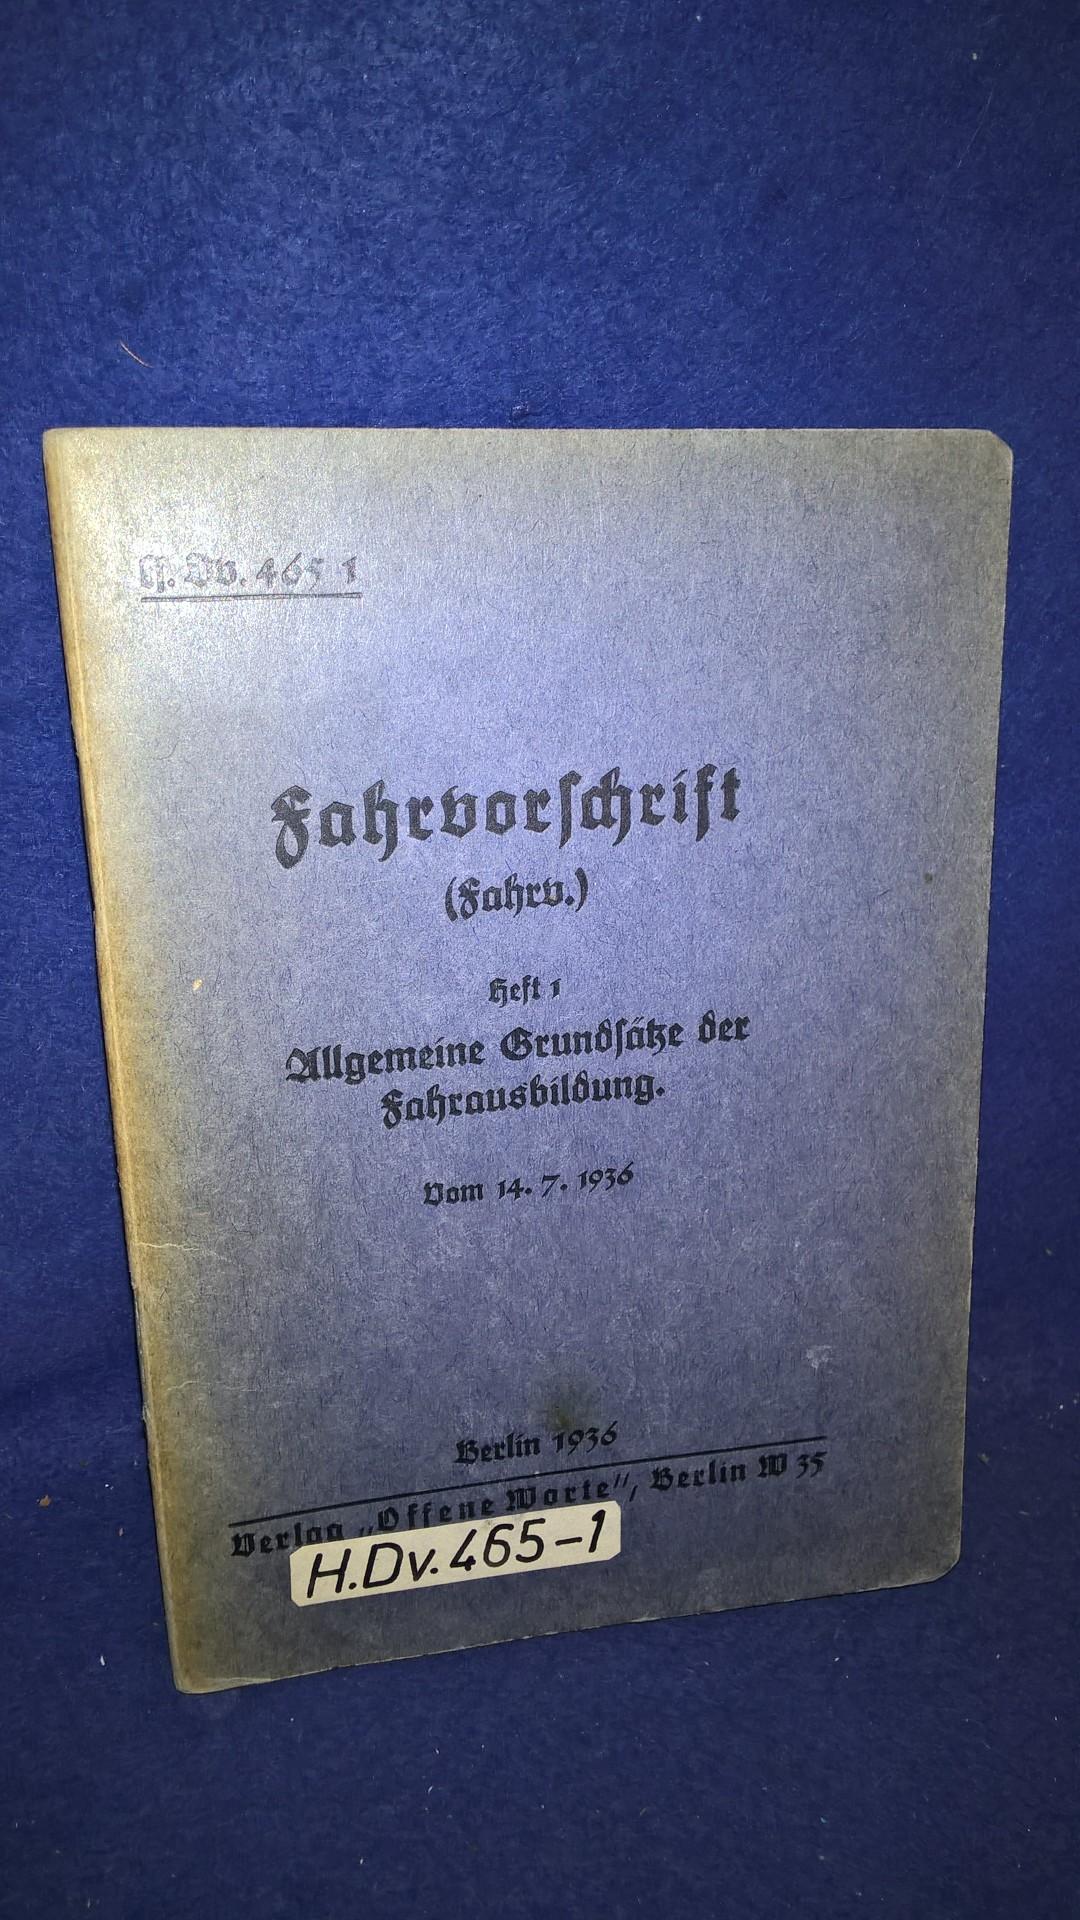 H.Dv. 465/1. Fahrvorschrift. Heft 1: Allgemeine Grundsätze der Fahrausbildung.